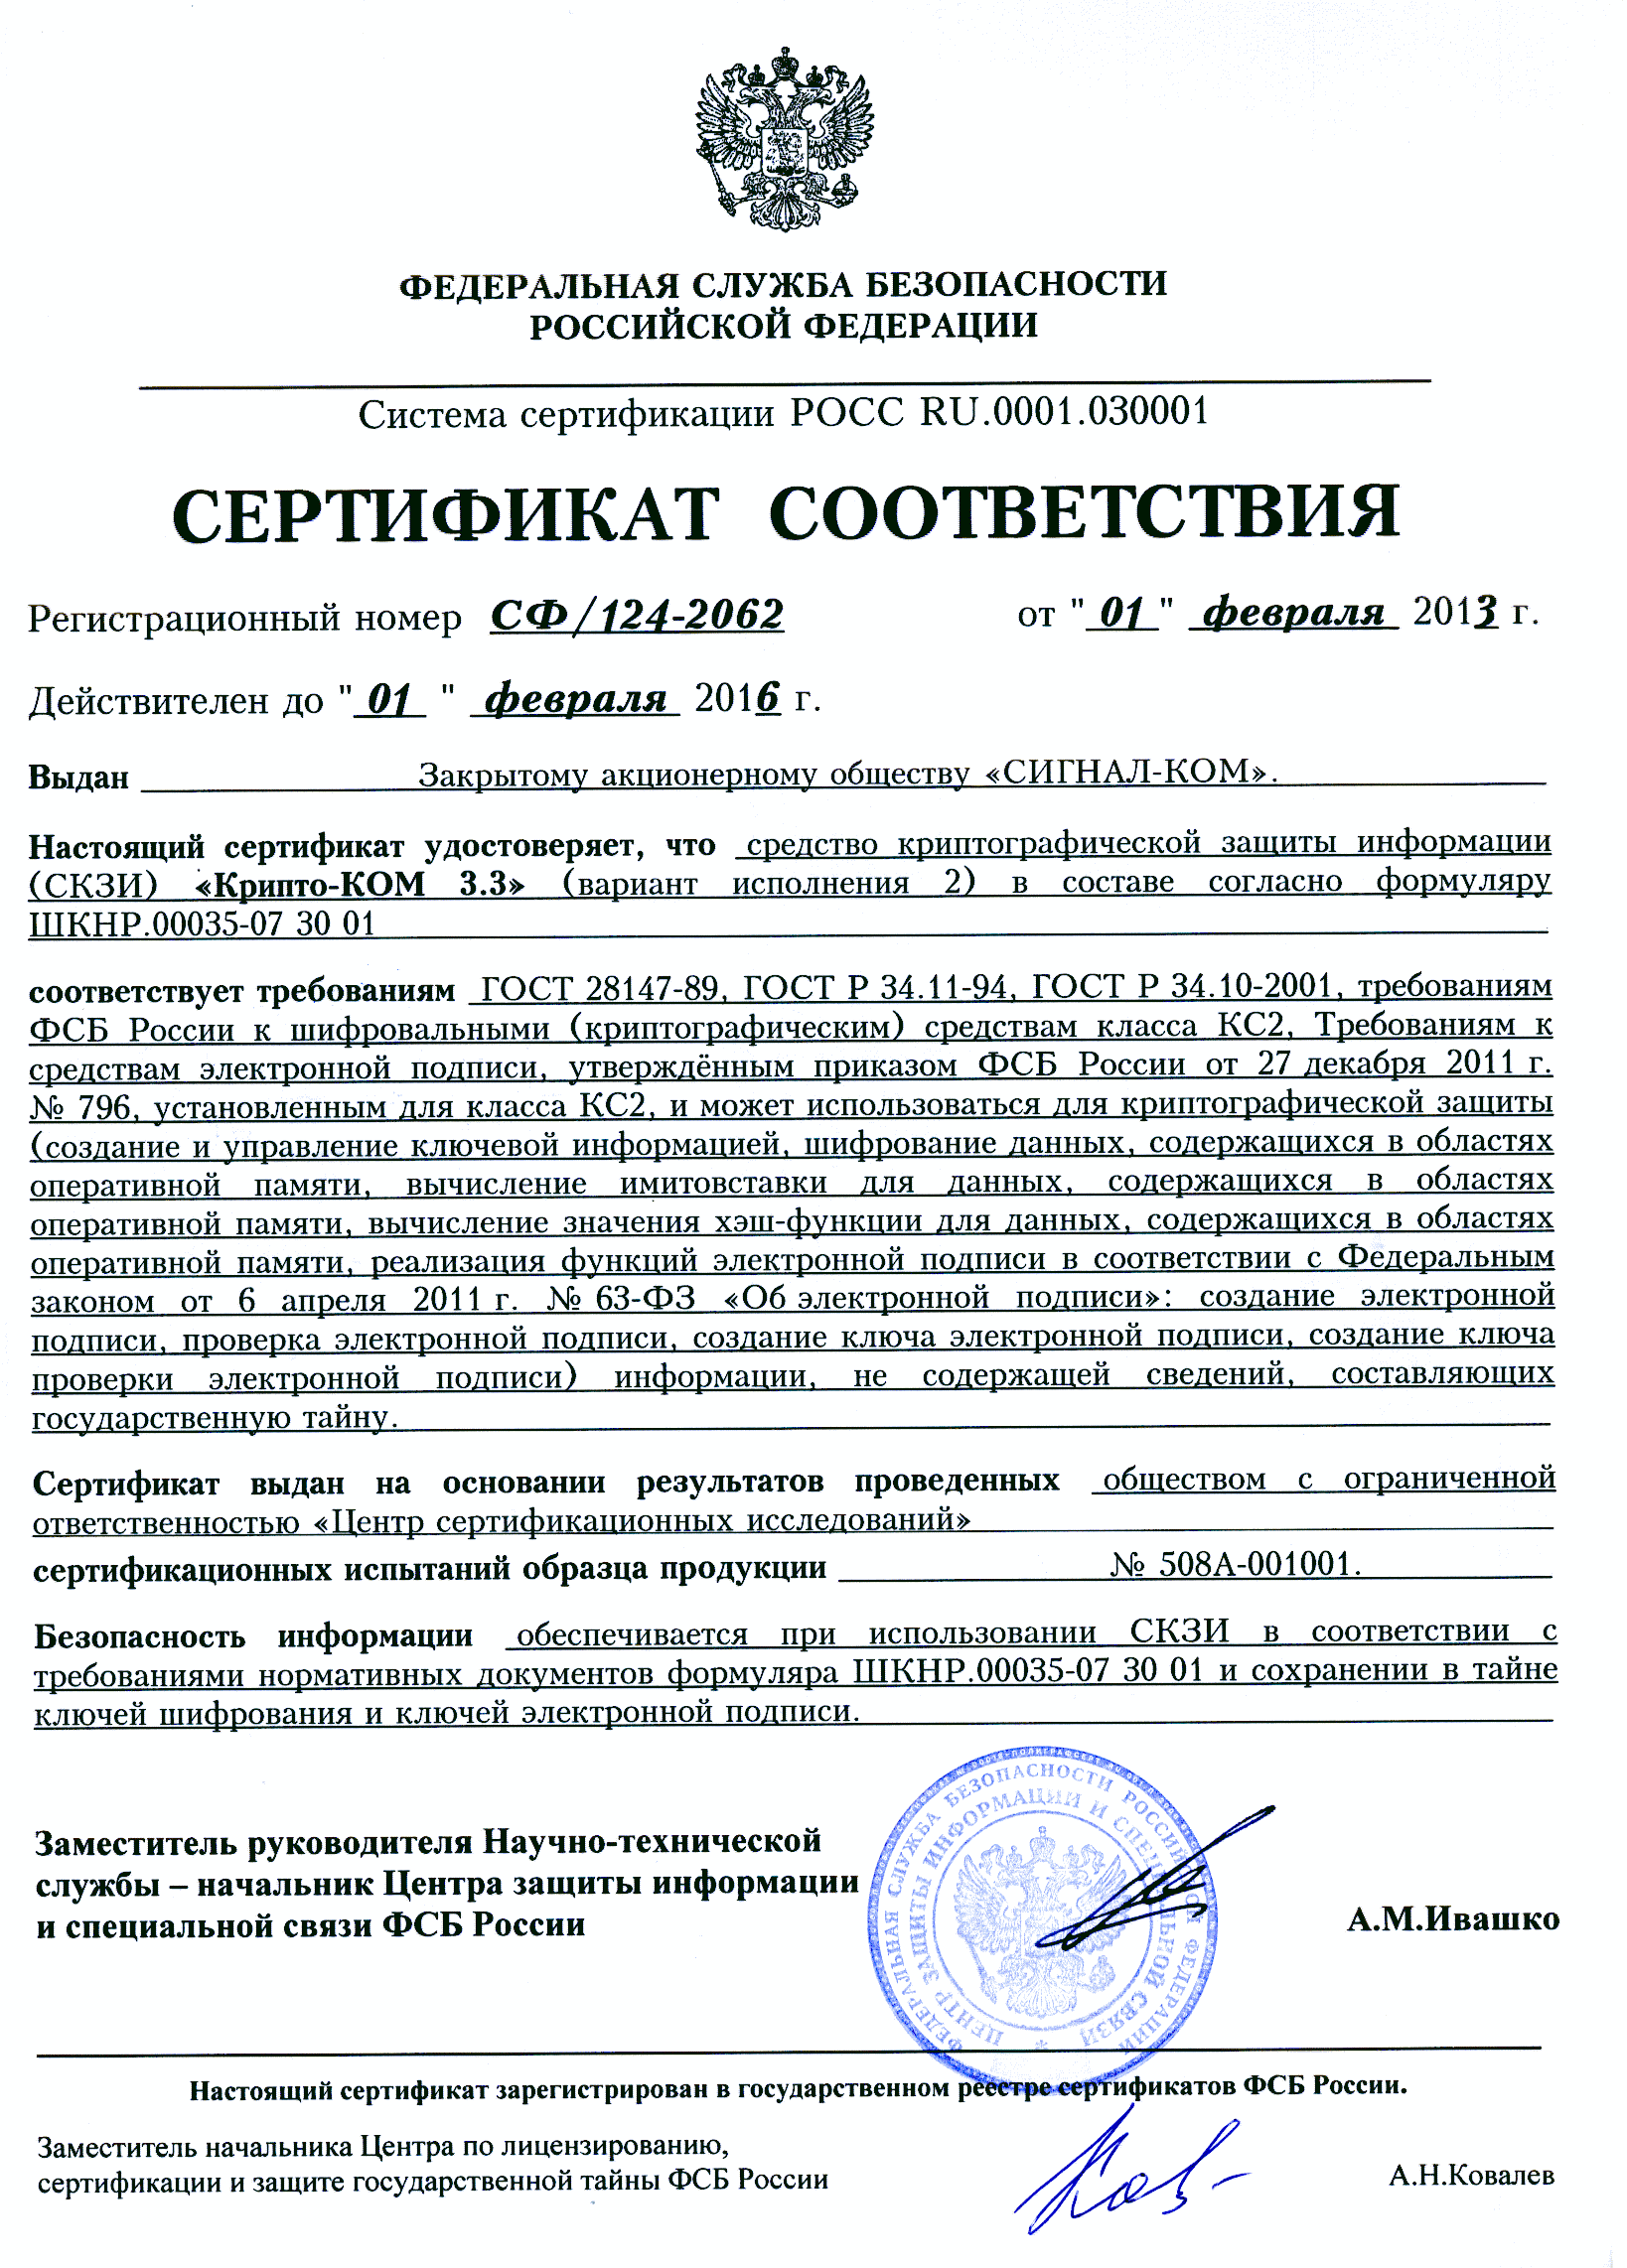 Сертификат шифрования органа сфр. СКЗИ “Форос 2” СФ/124-3911.